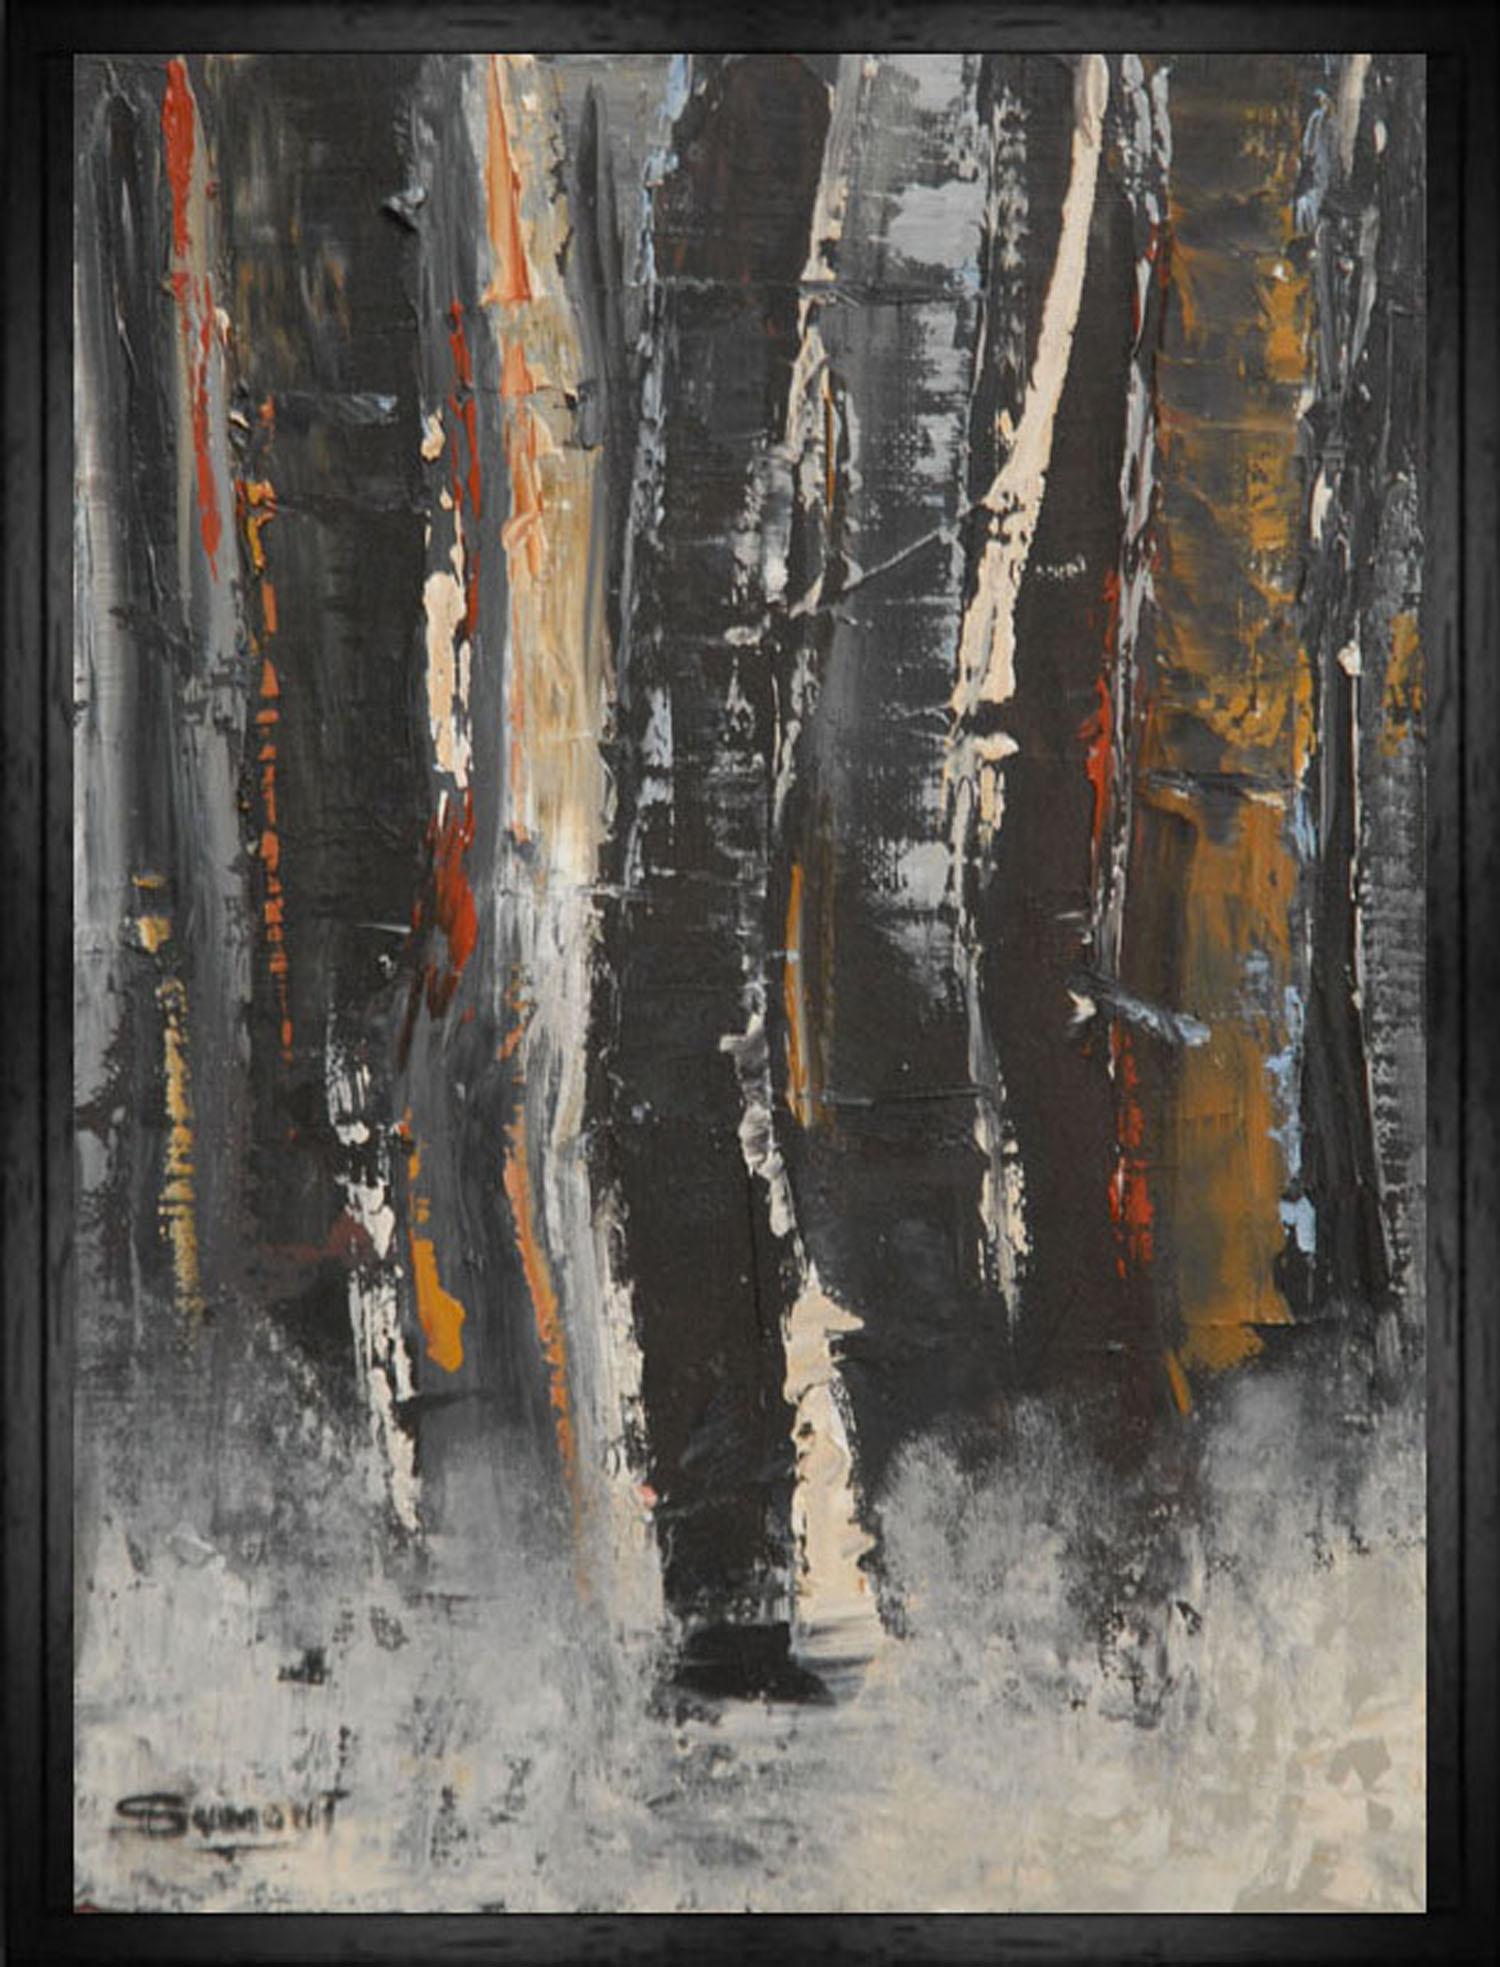 SOPHIE DUMONT Landscape Painting – Winterwald, schwarze Bäume, Öl auf Leinwand, Expressionismus abstrakt, Contemporary